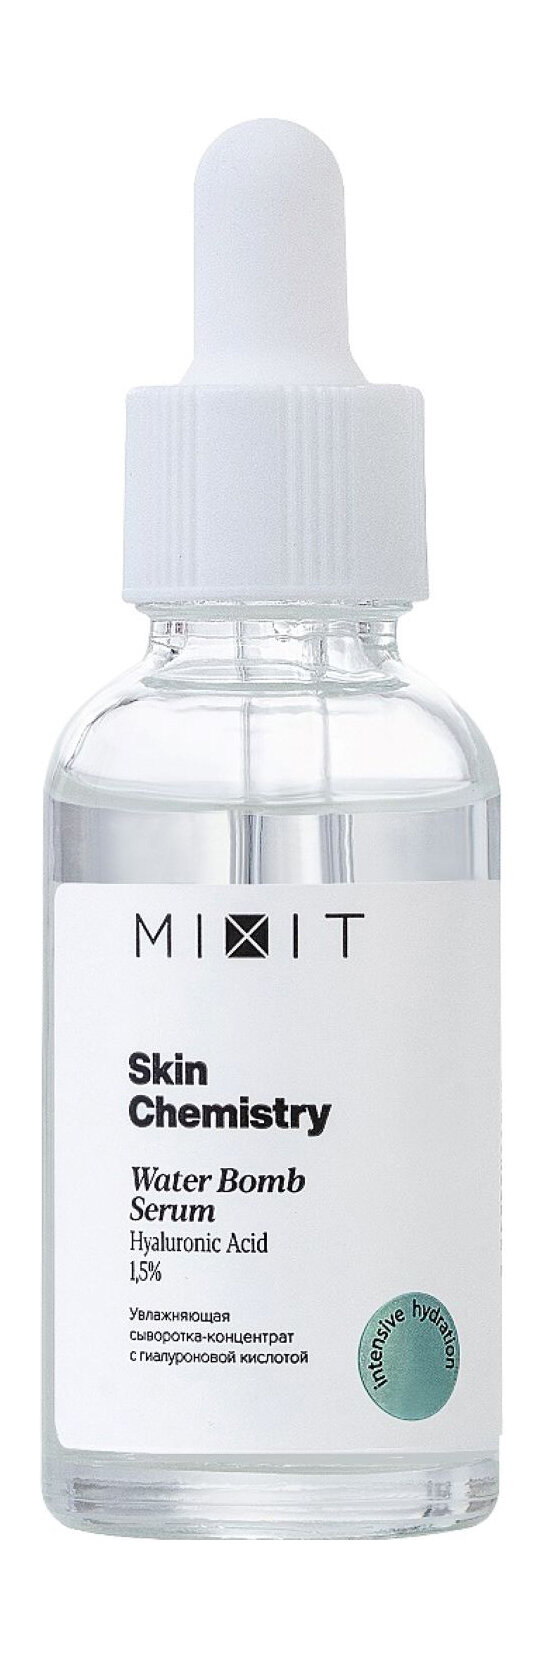 MIXIT Сыворотка-концентрат для лица MIXIT Skin Chemistry с гиалуроновой кислотой увлажняющая, 30 мл